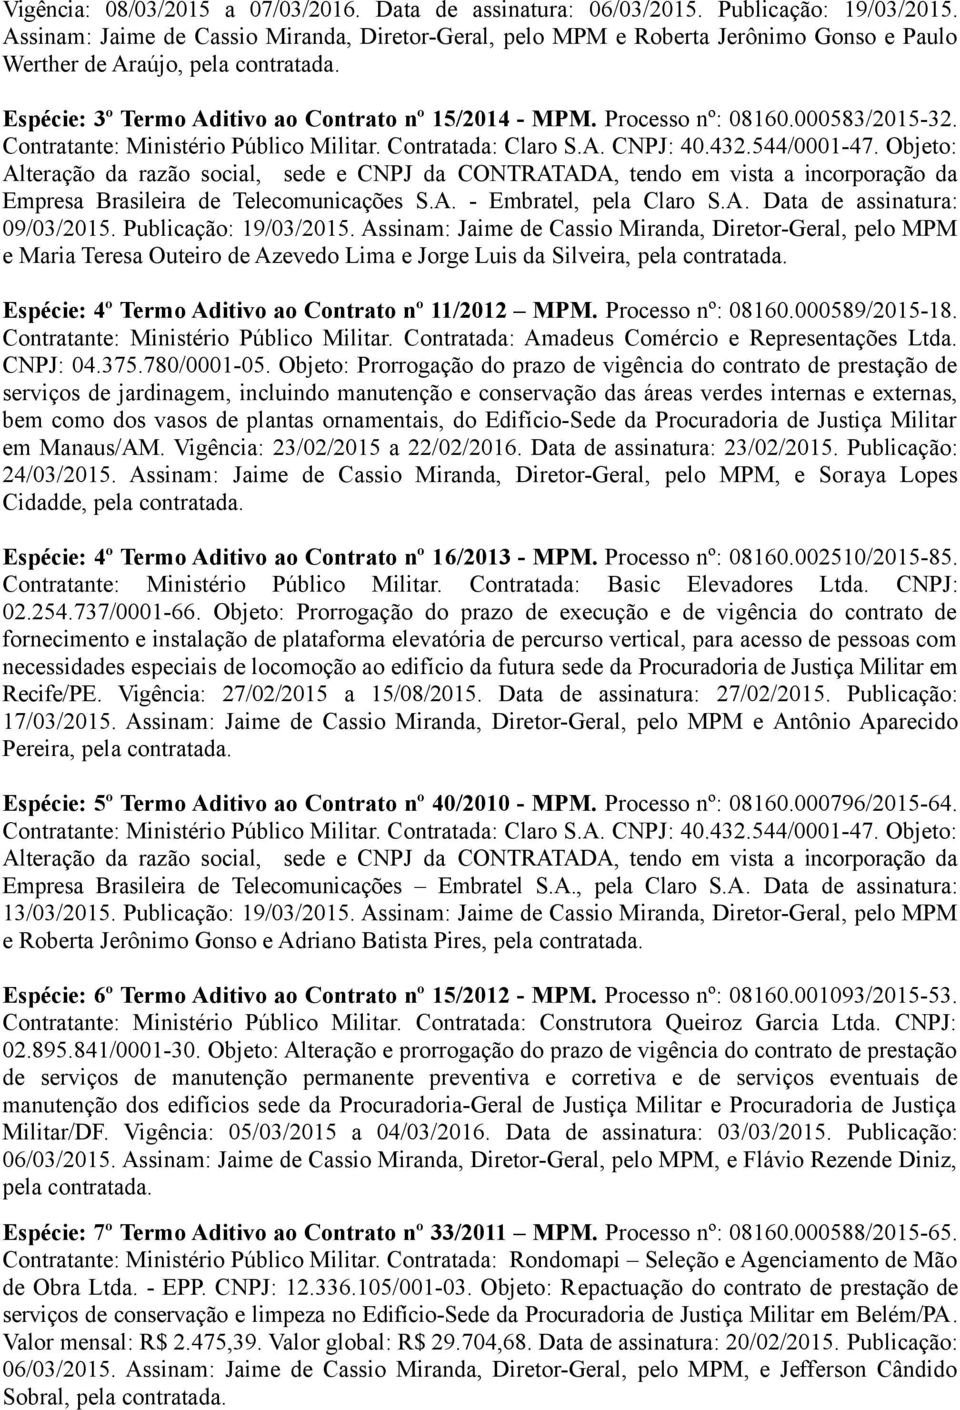 000583/2015-32. Empresa Brasileira de Telecomunicações S.A. - Embratel, pela Claro S.A. Data de assinatura: 09/03/2015. Publicação: 19/03/2015.